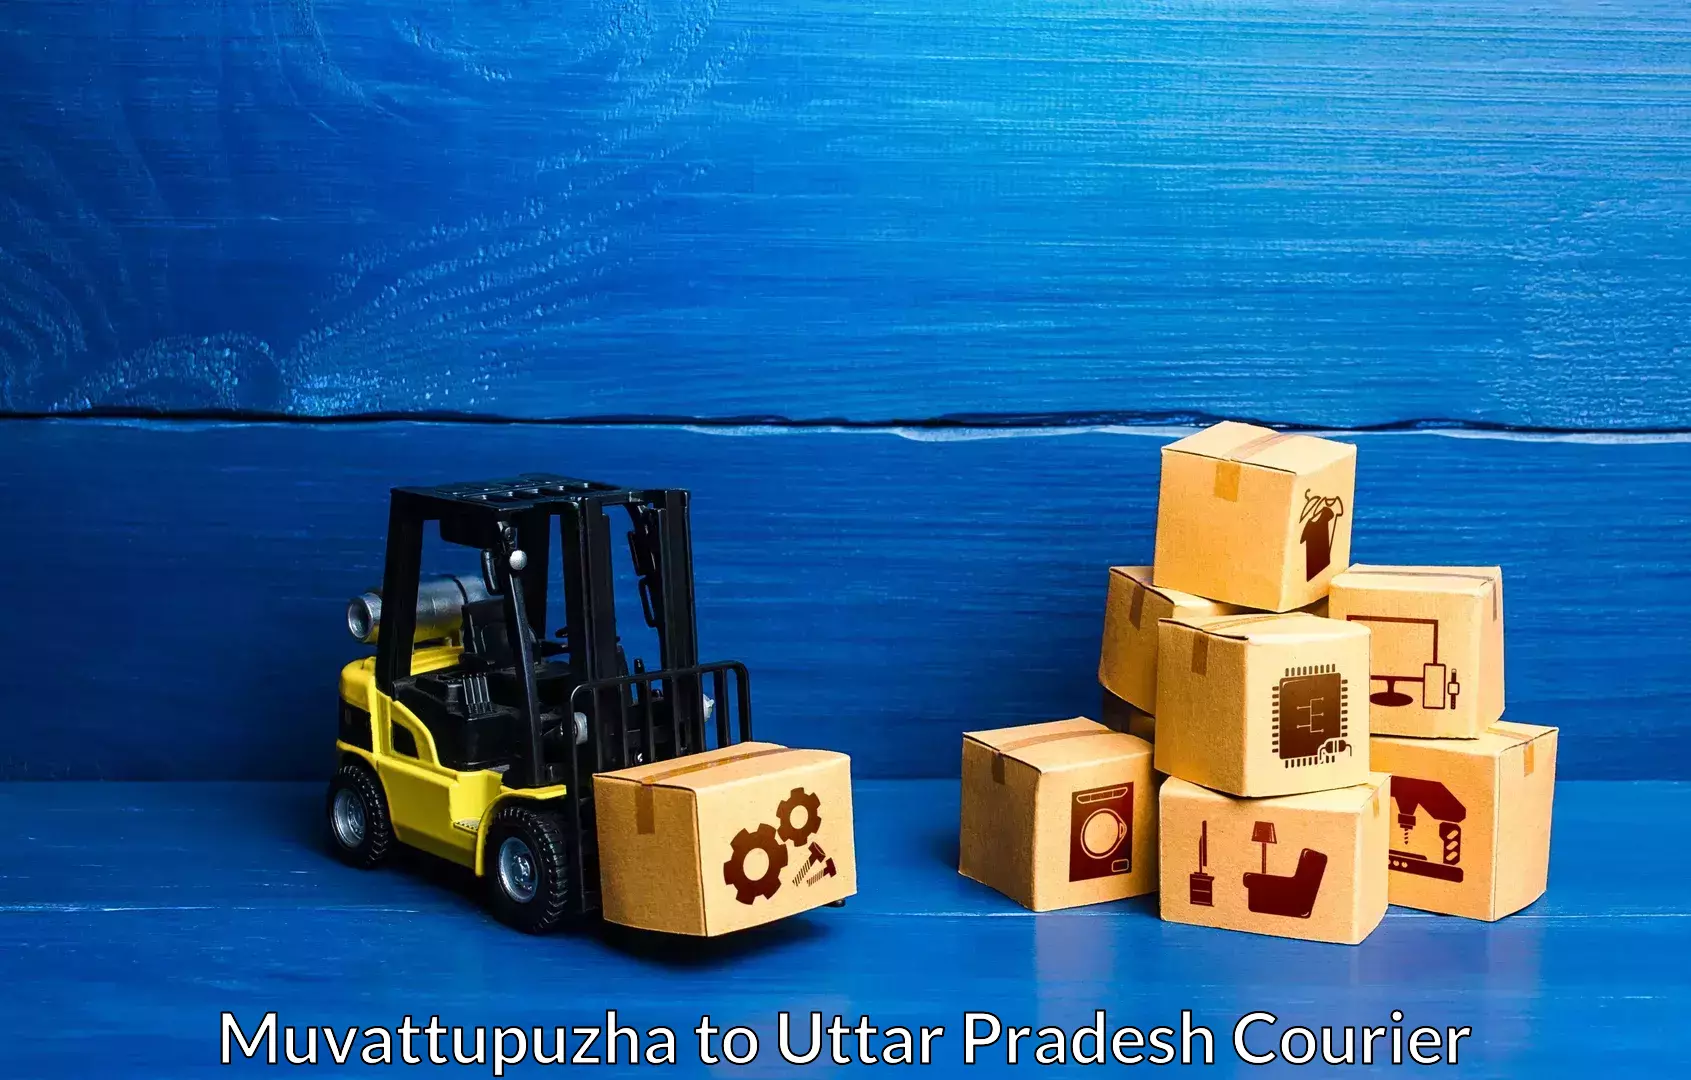 Furniture moving experts Muvattupuzha to Kauriram